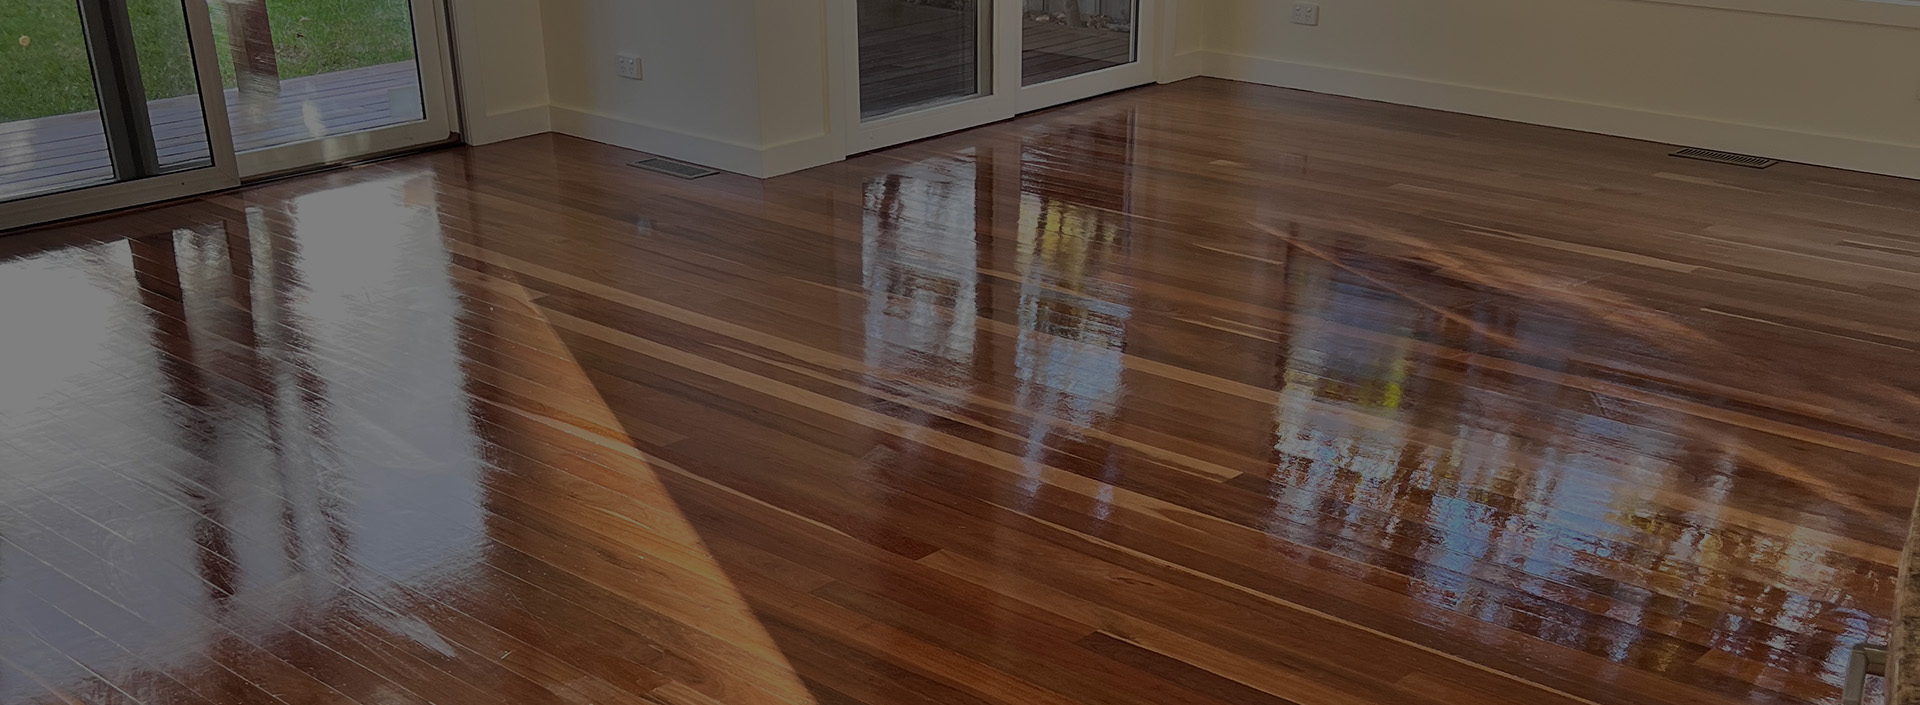 hardwood floor cleaner melbourne